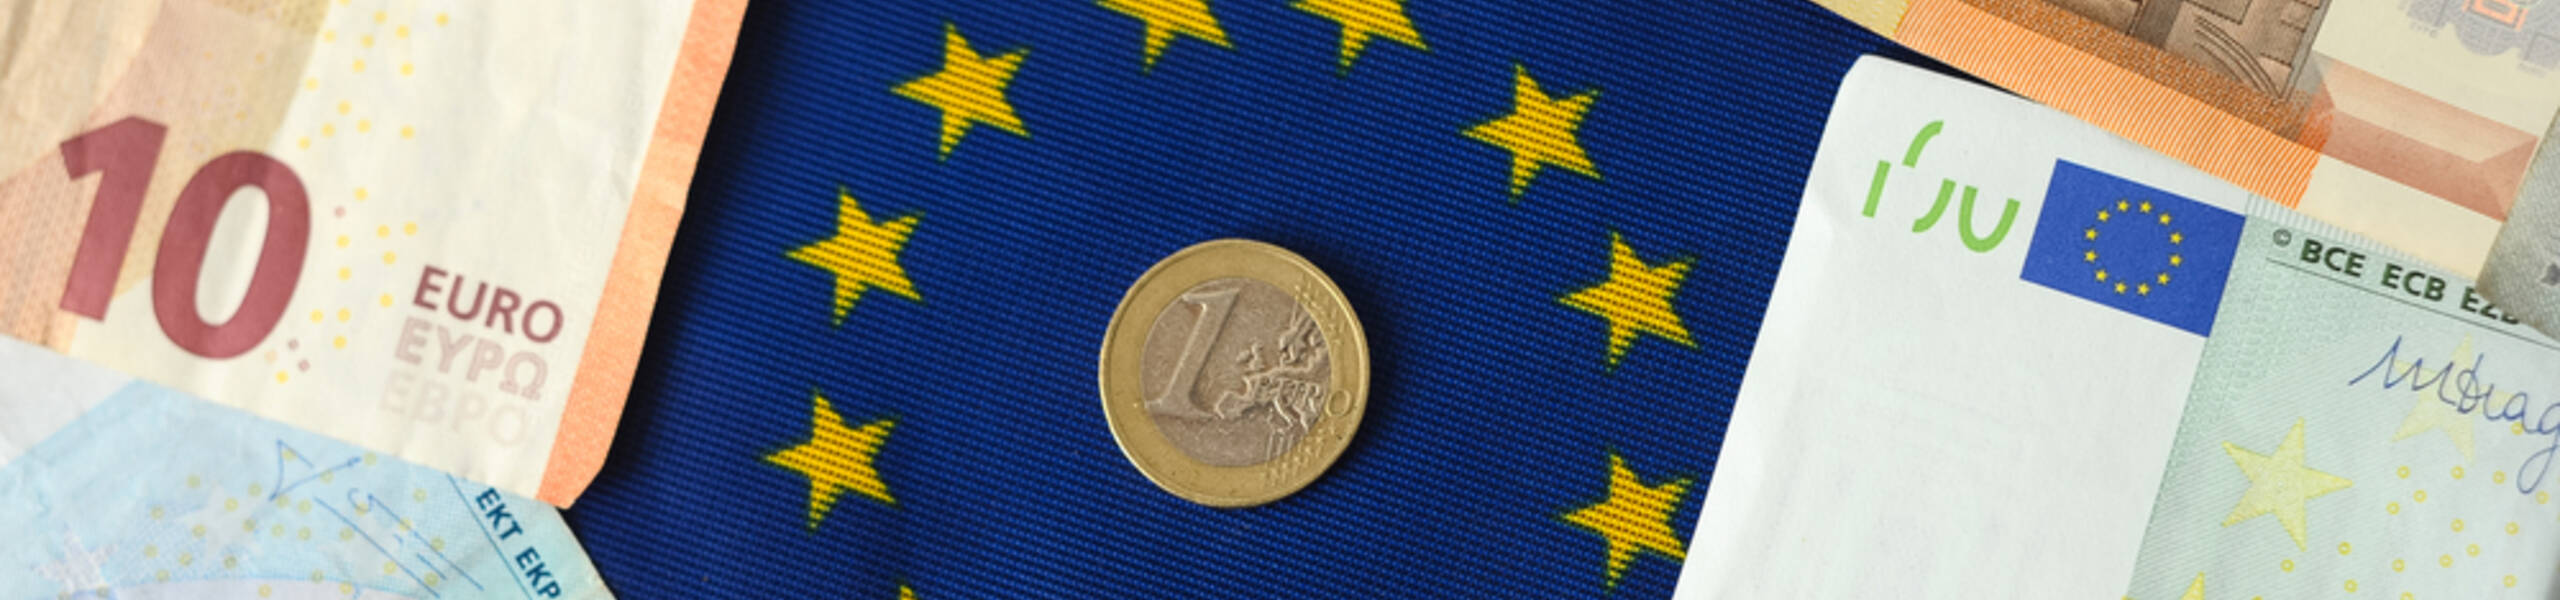 Main Refinancing Rate และ ECB Press Conference ของธนาคารกลางยุโรปหรือ EUR อาจจะผันผวนระยะสั้น